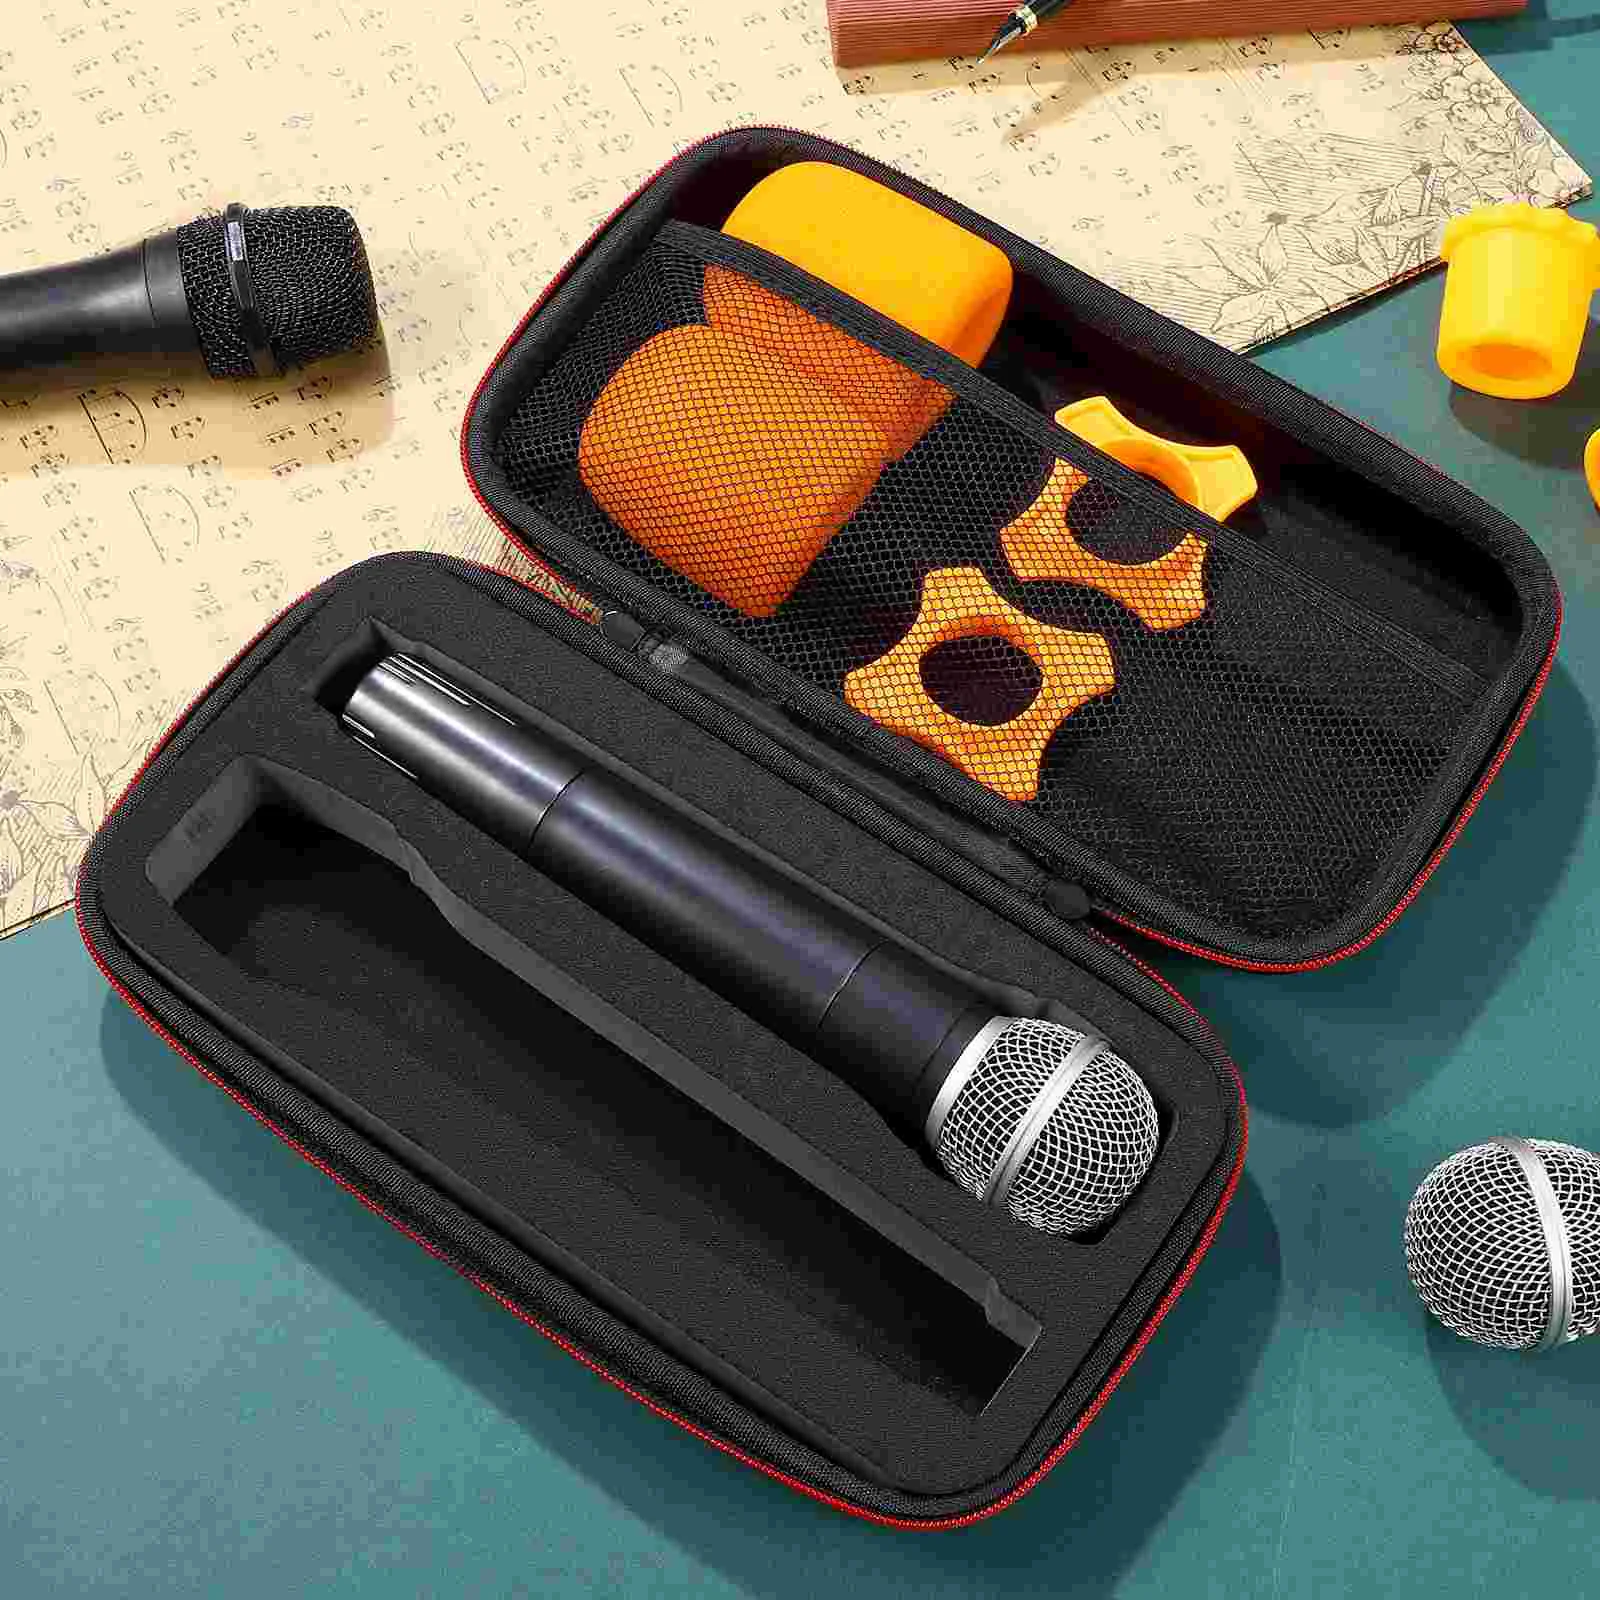  Чехол для микрофона Коробка для хранения Портативная сумка для микрофона на молнии Чехол для хранения 3